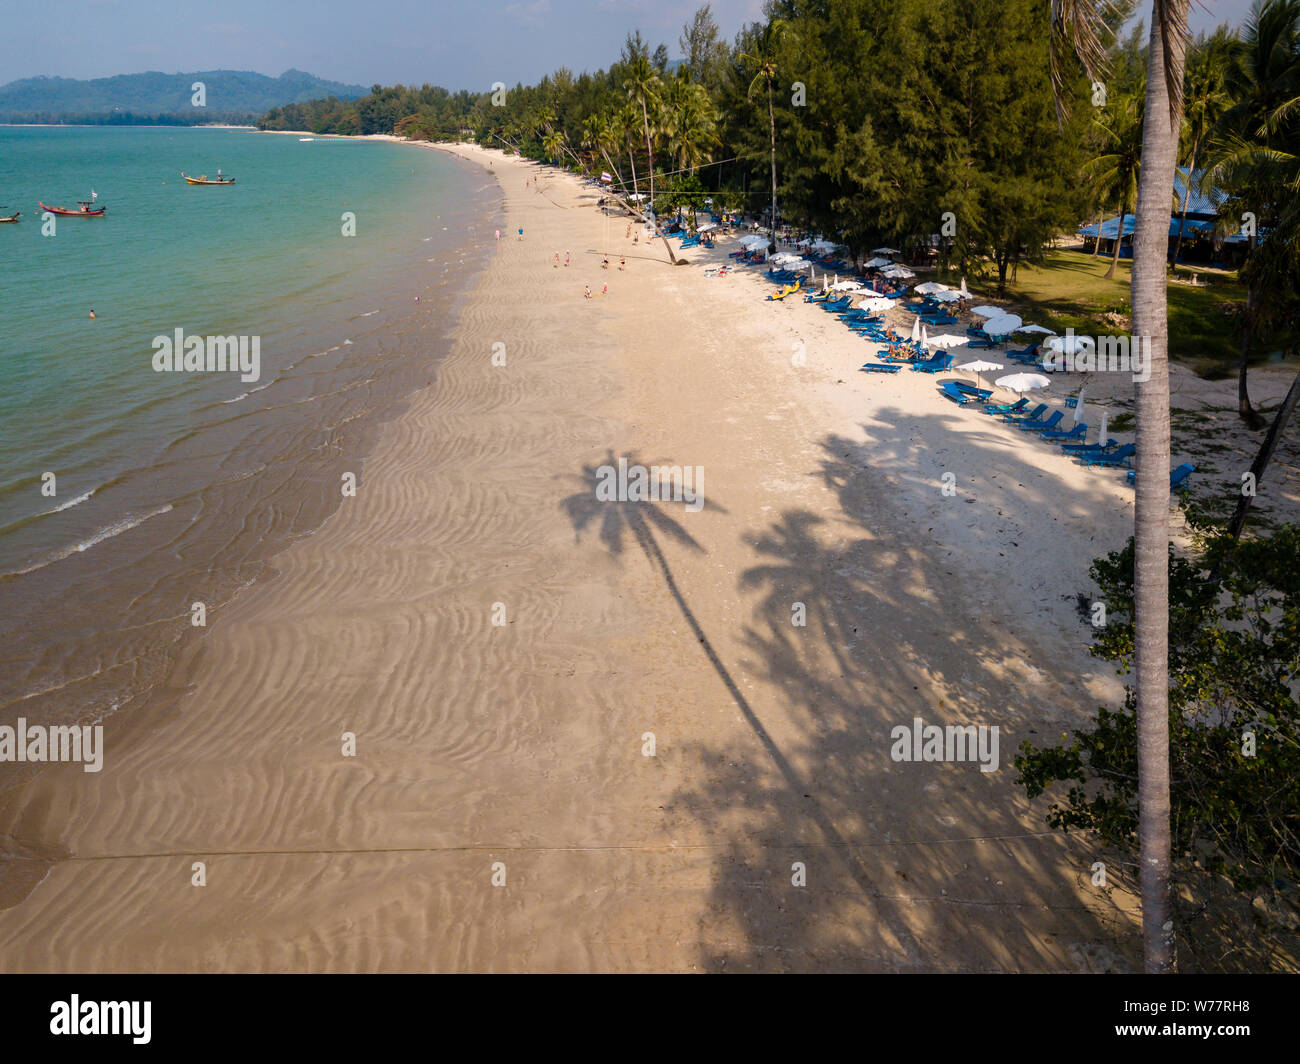 Antenne drone Blick auf einen langen Schatten einer Palme cast auf einen wunderschönen, tropischen Strand leer Stockfoto